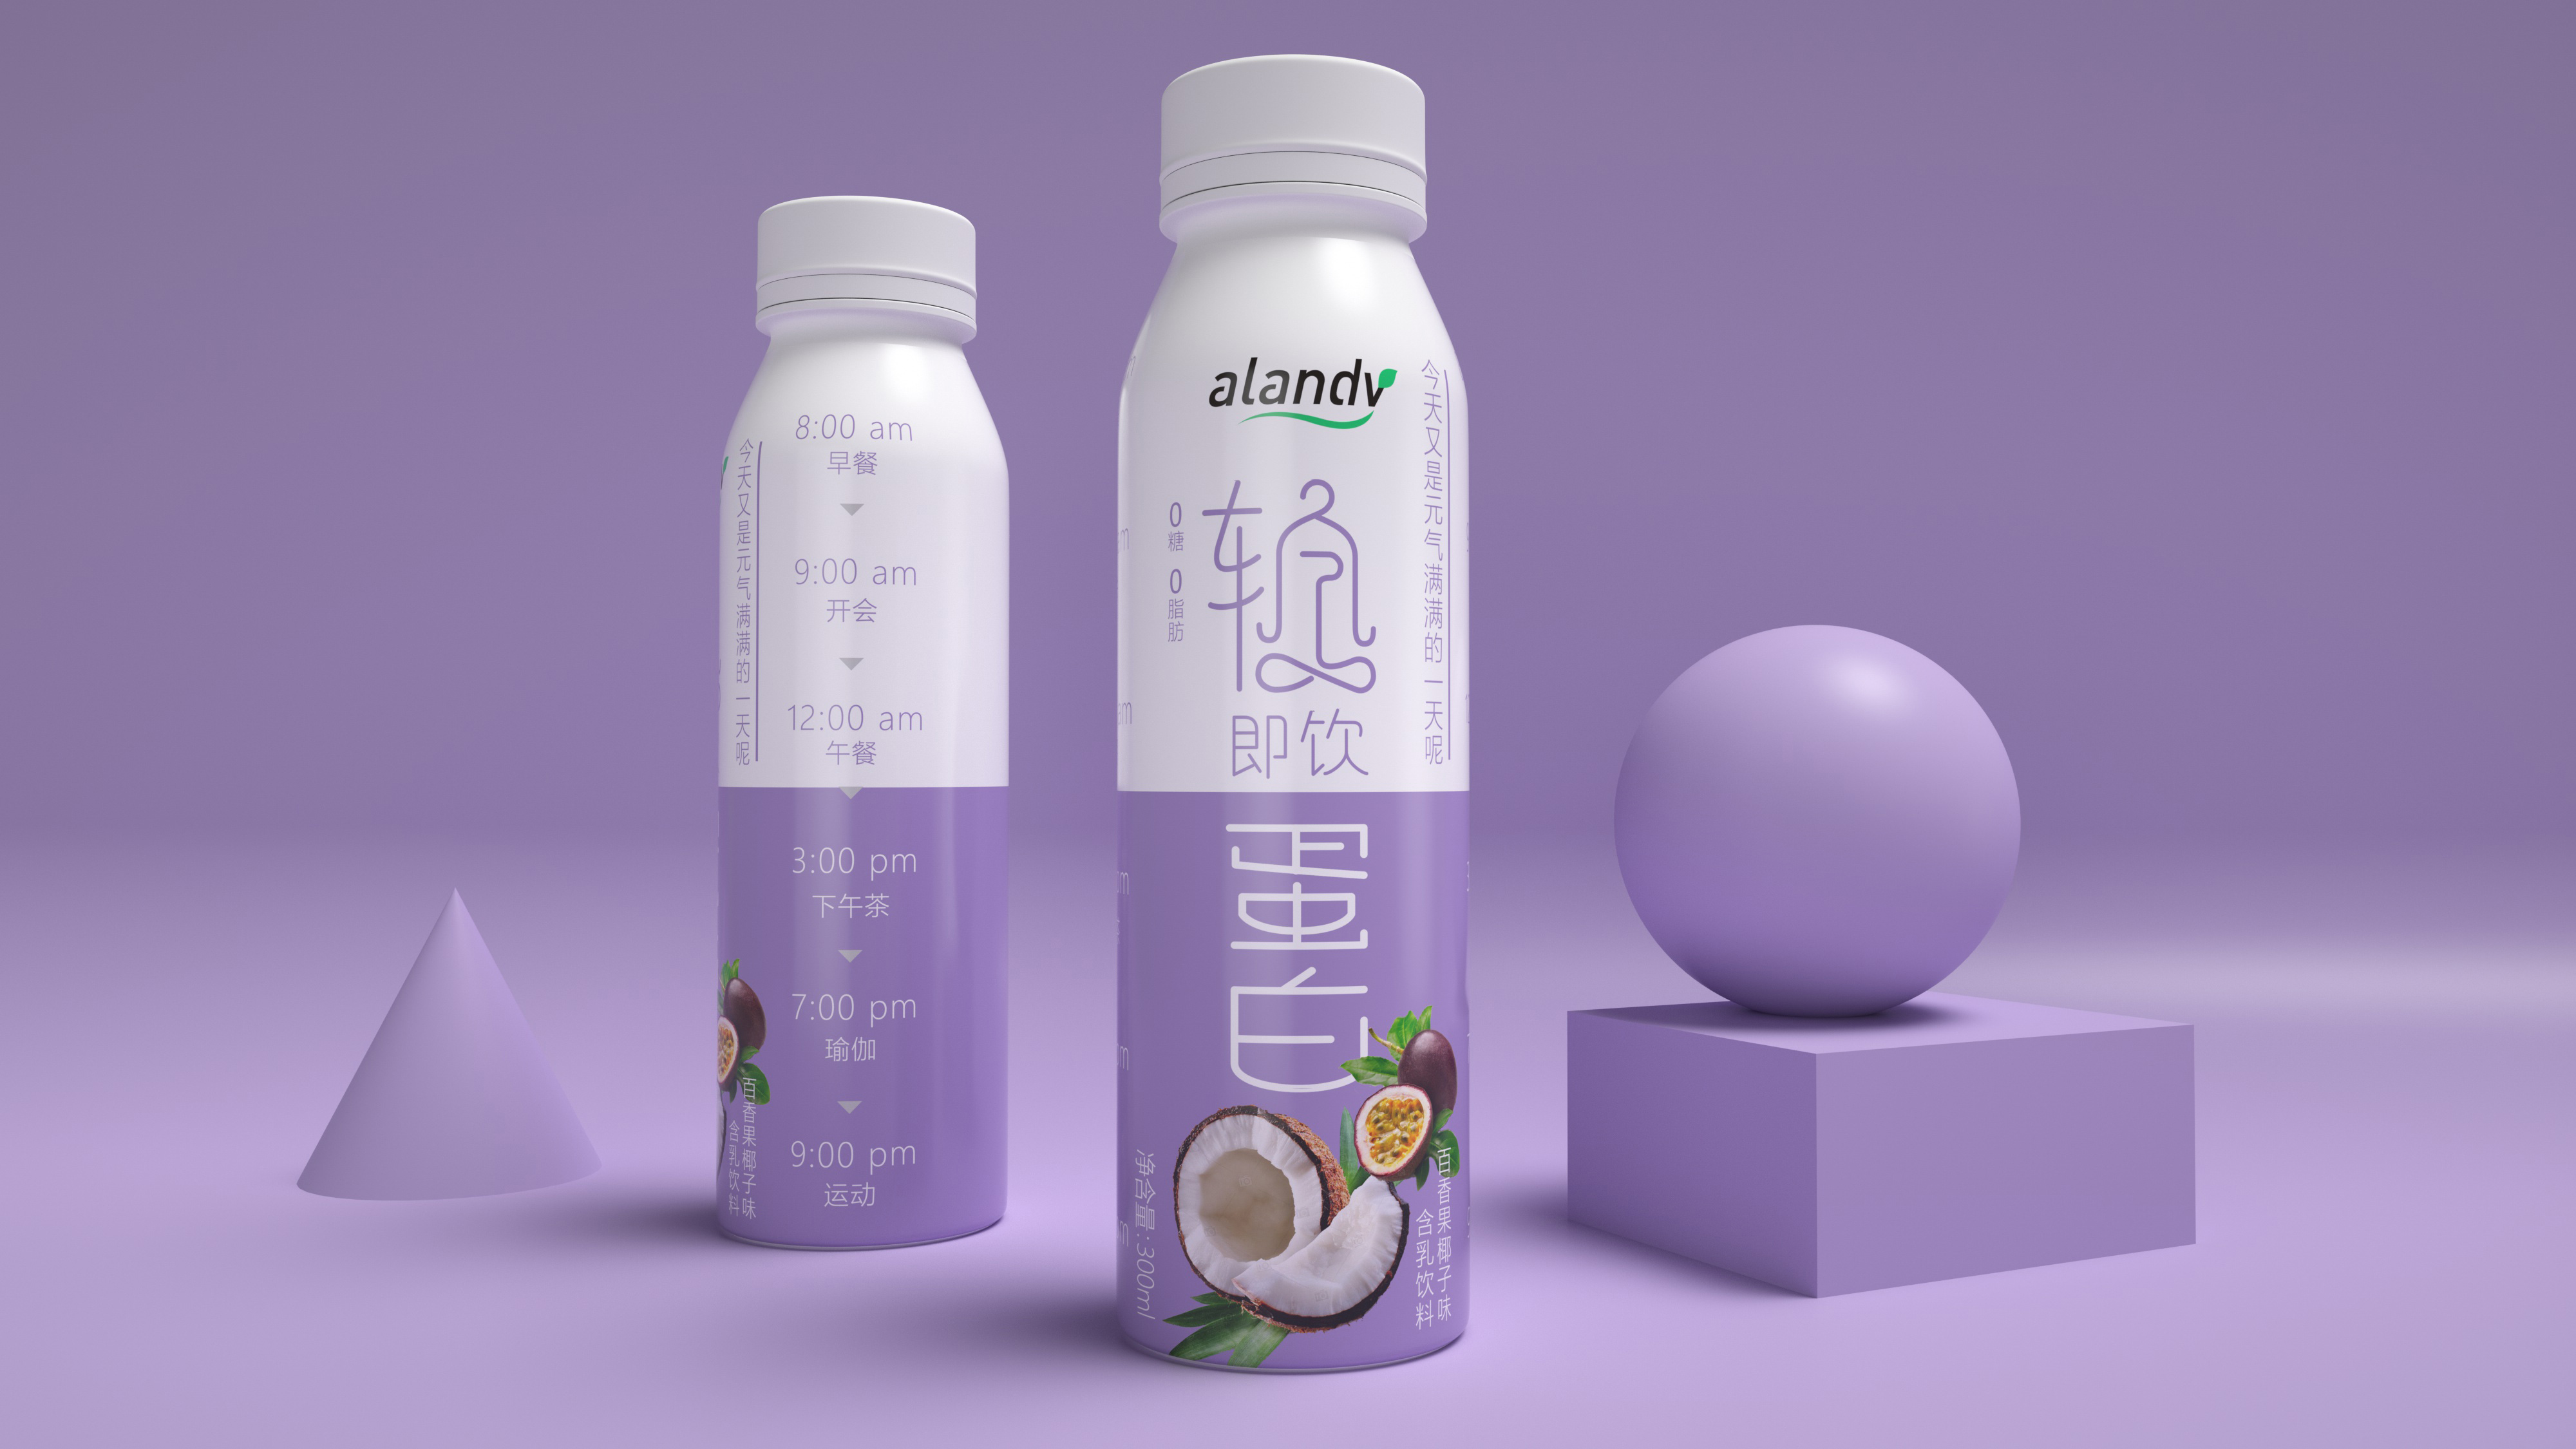 原创包装设计/艾兰得威/轻即饮蛋白质饮料包装设计 米克包装设计